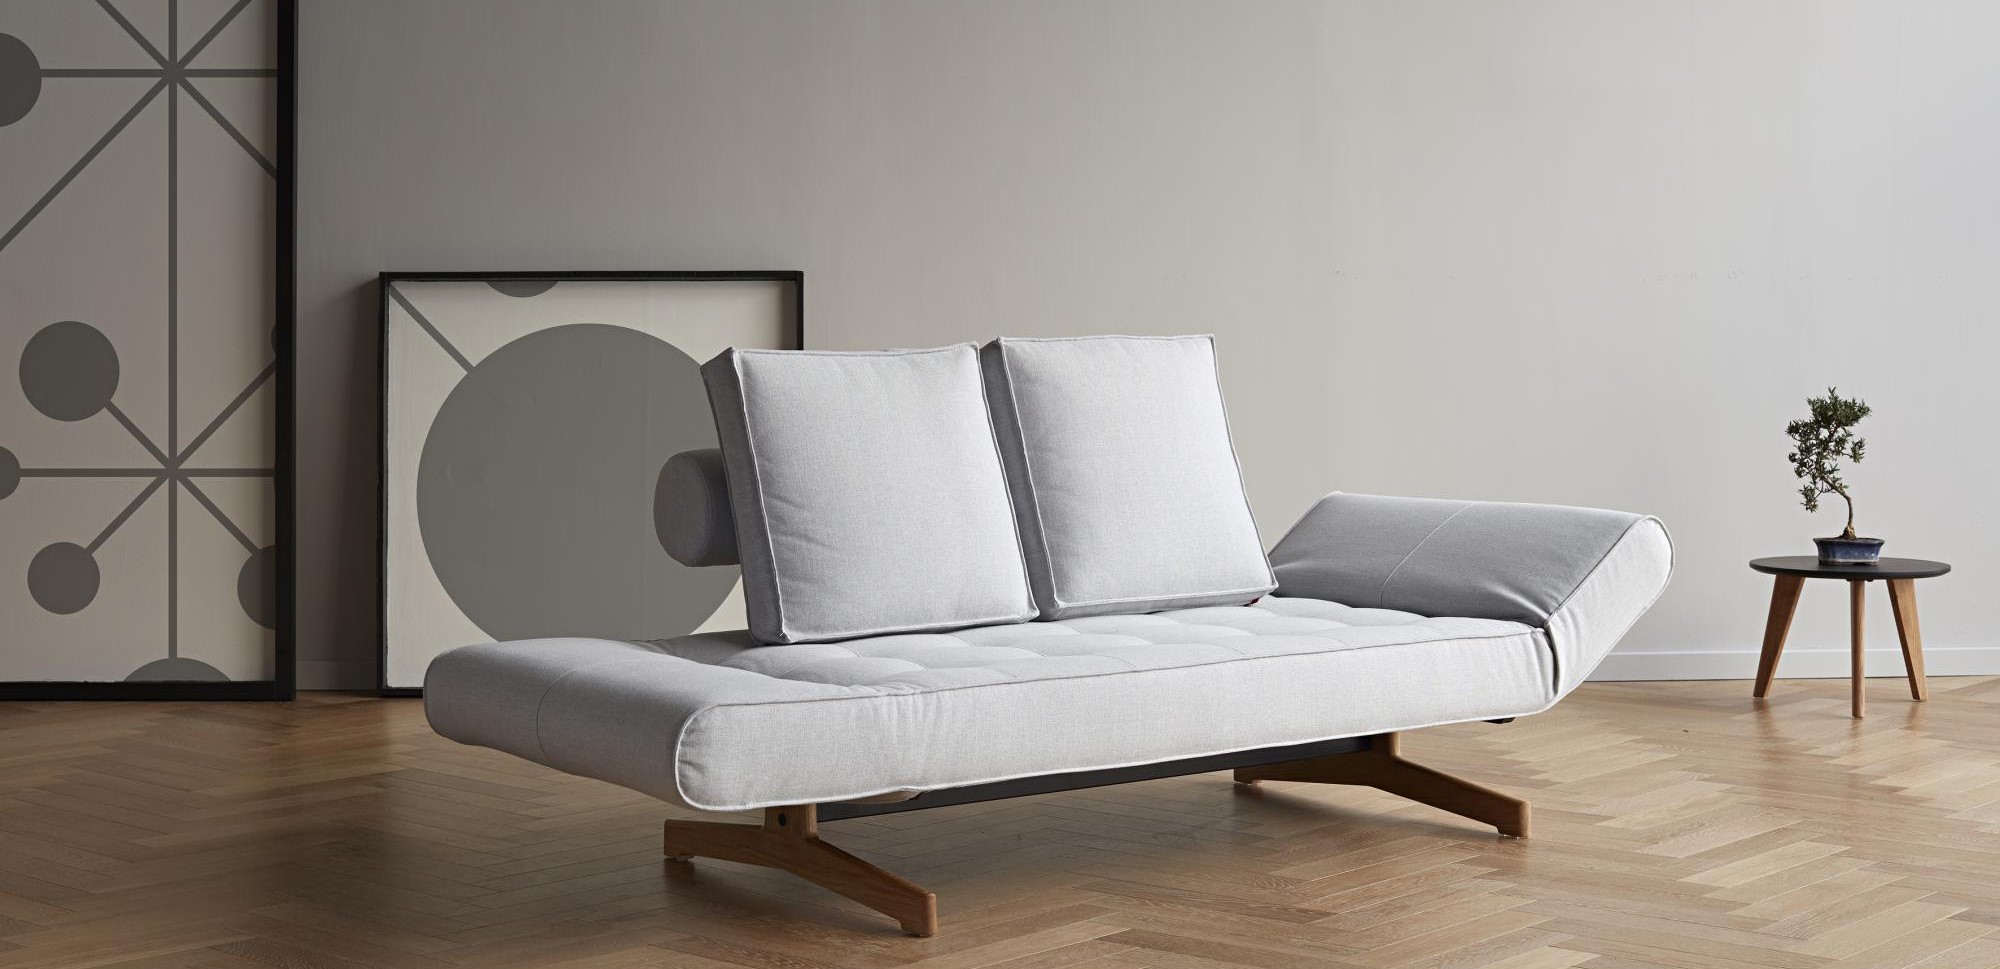 Thiết kế sofa giường sang trọng hiện đại